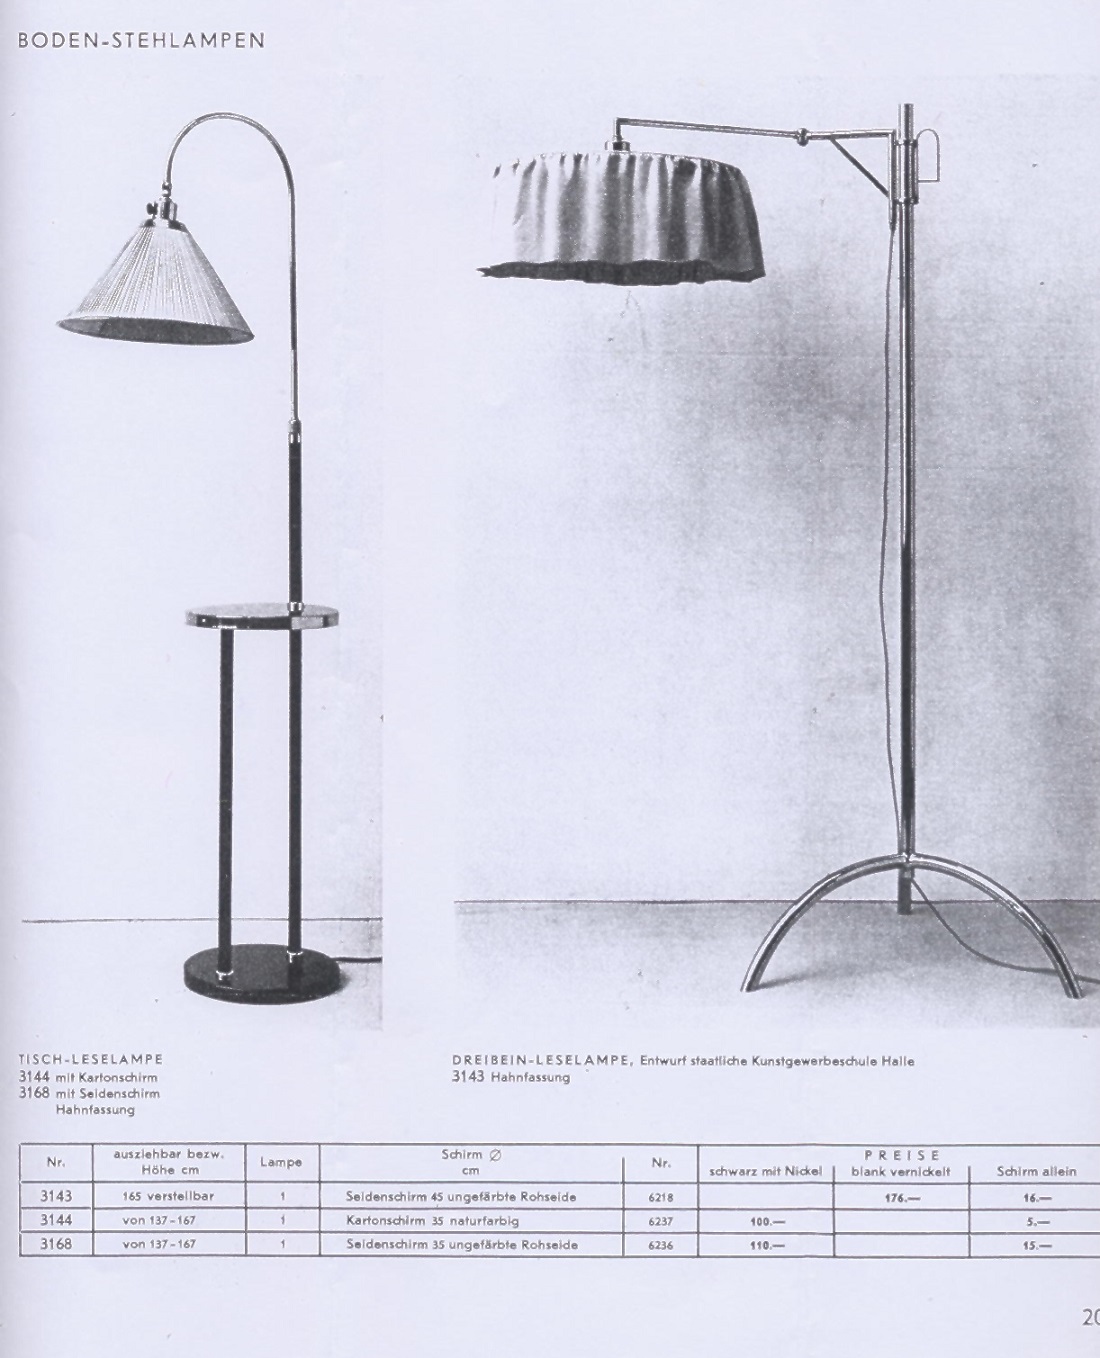 Dreibein-Leuchte von Bünte & Remmmler (Bildquelle: Katalog Bünte & Remmler 1931/32, S. 20)